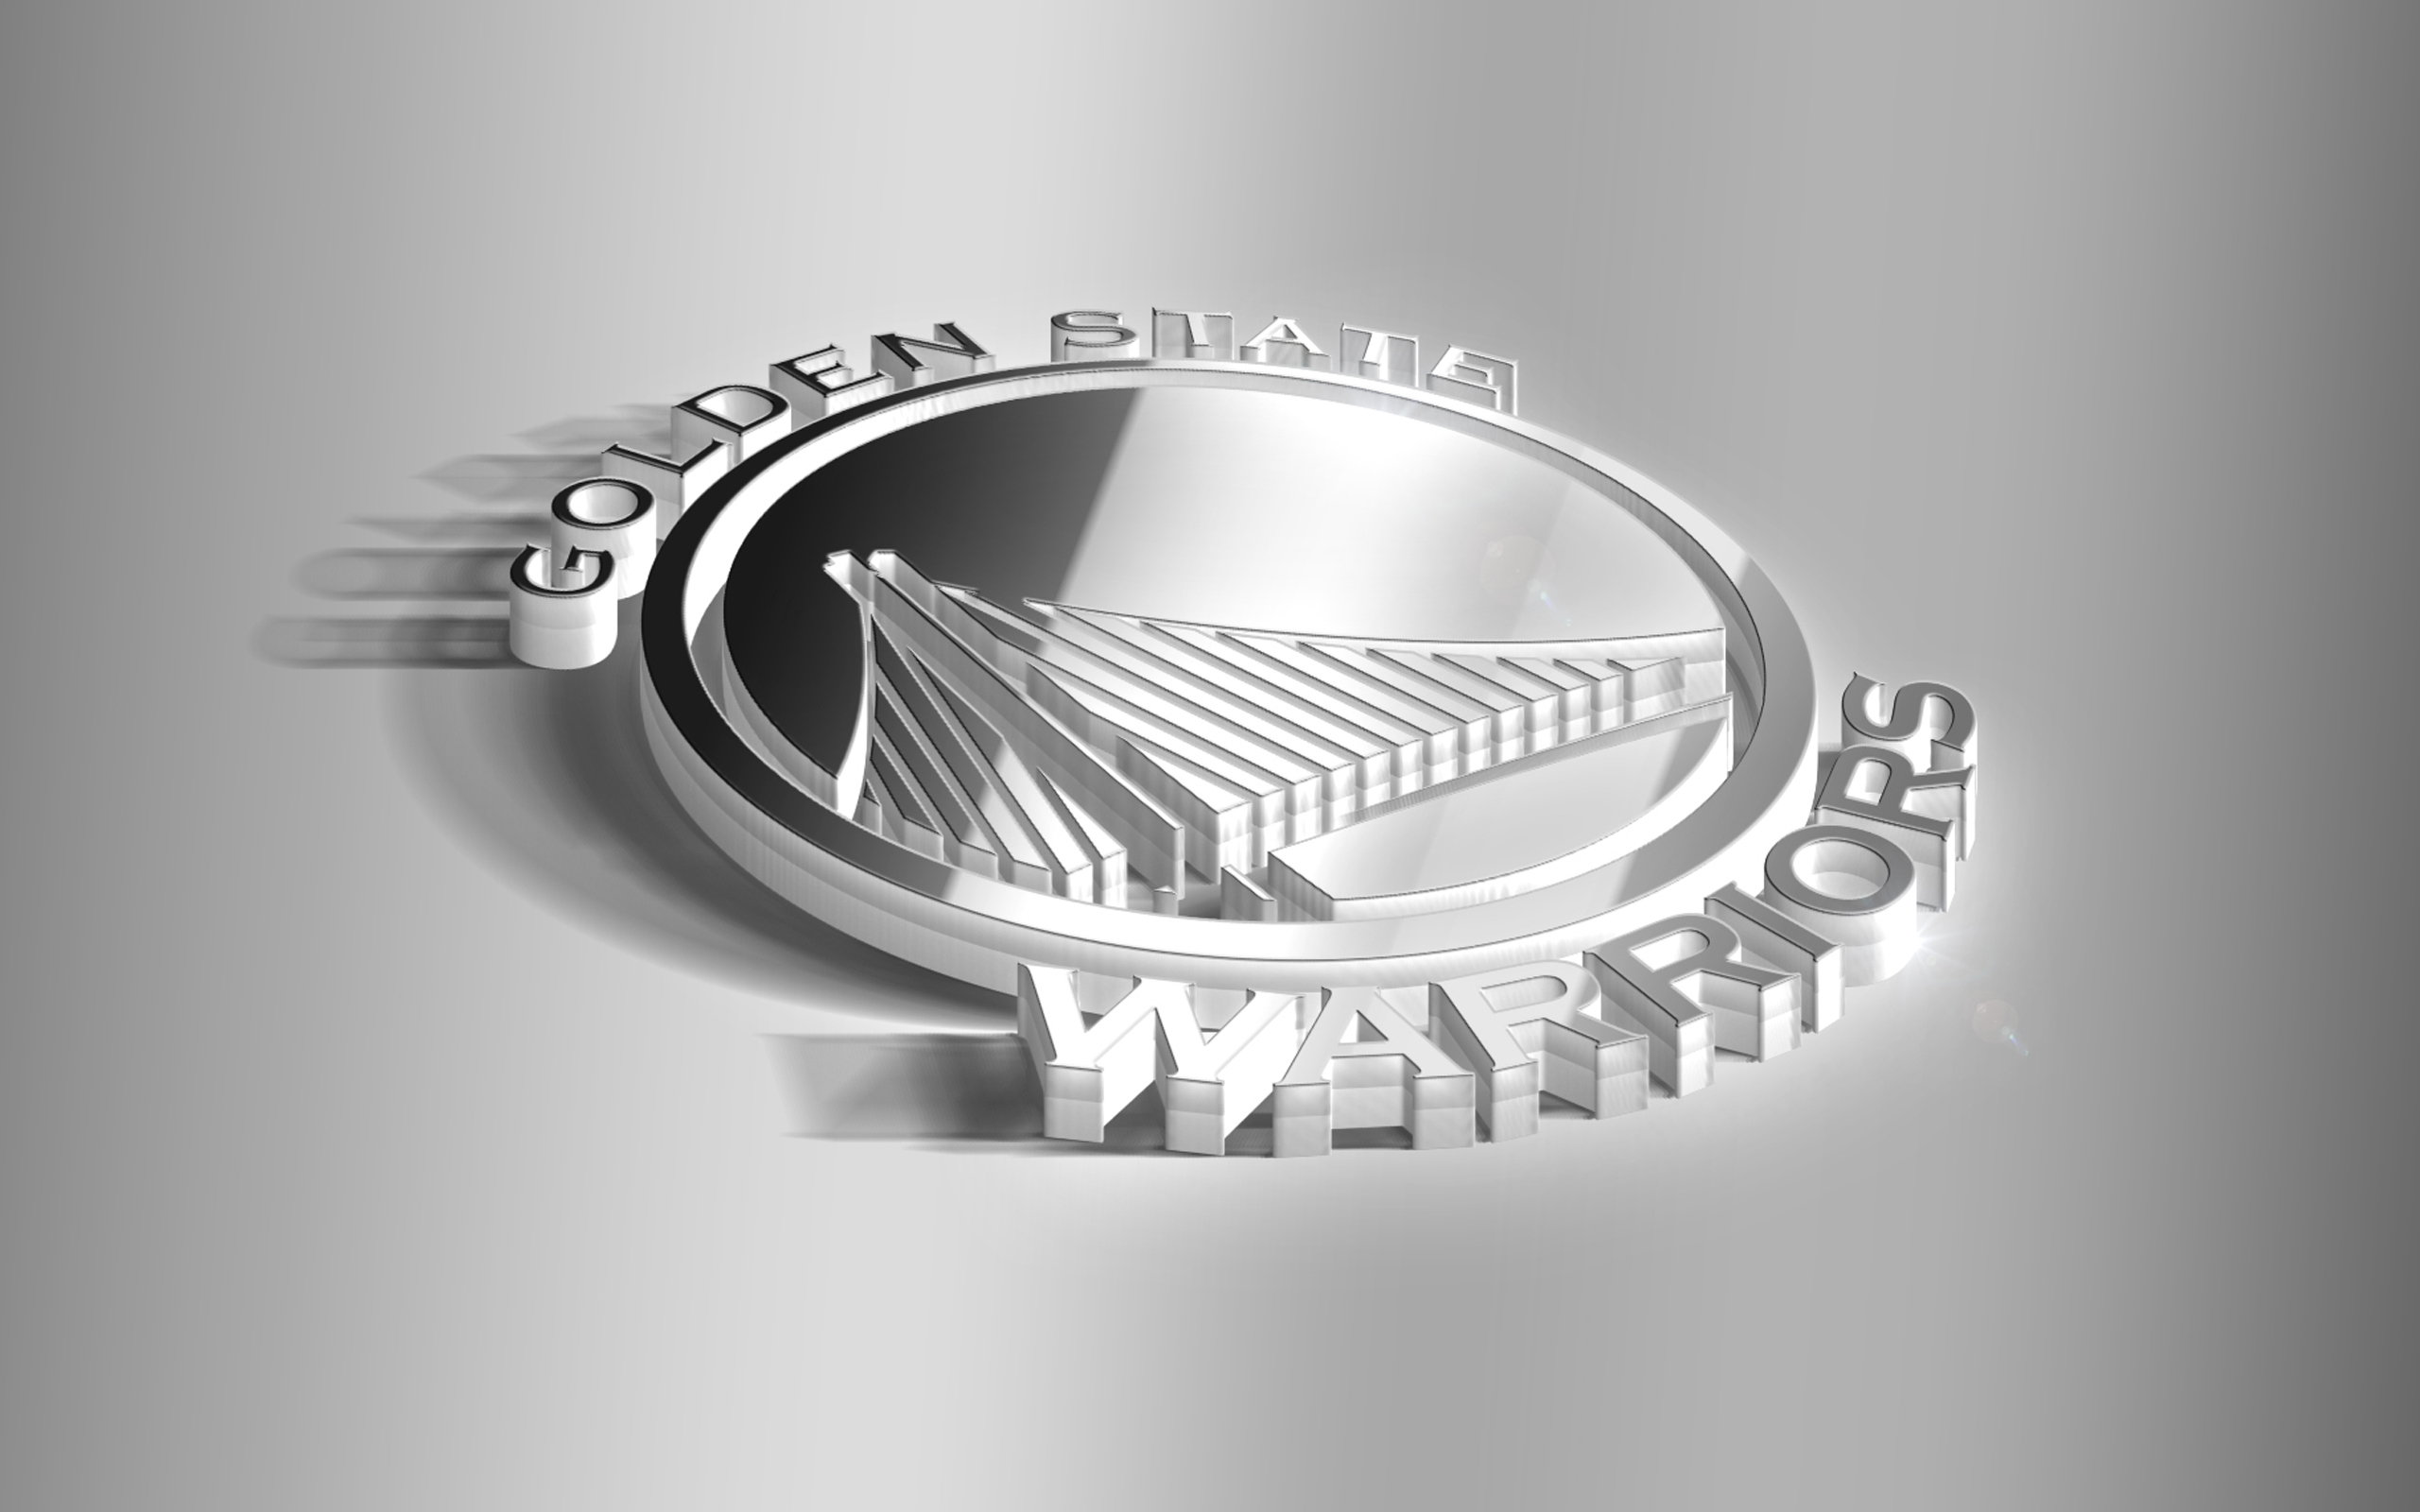 Golden State Warriors  Basketball Team  Logo Wallpaper Download  MobCup